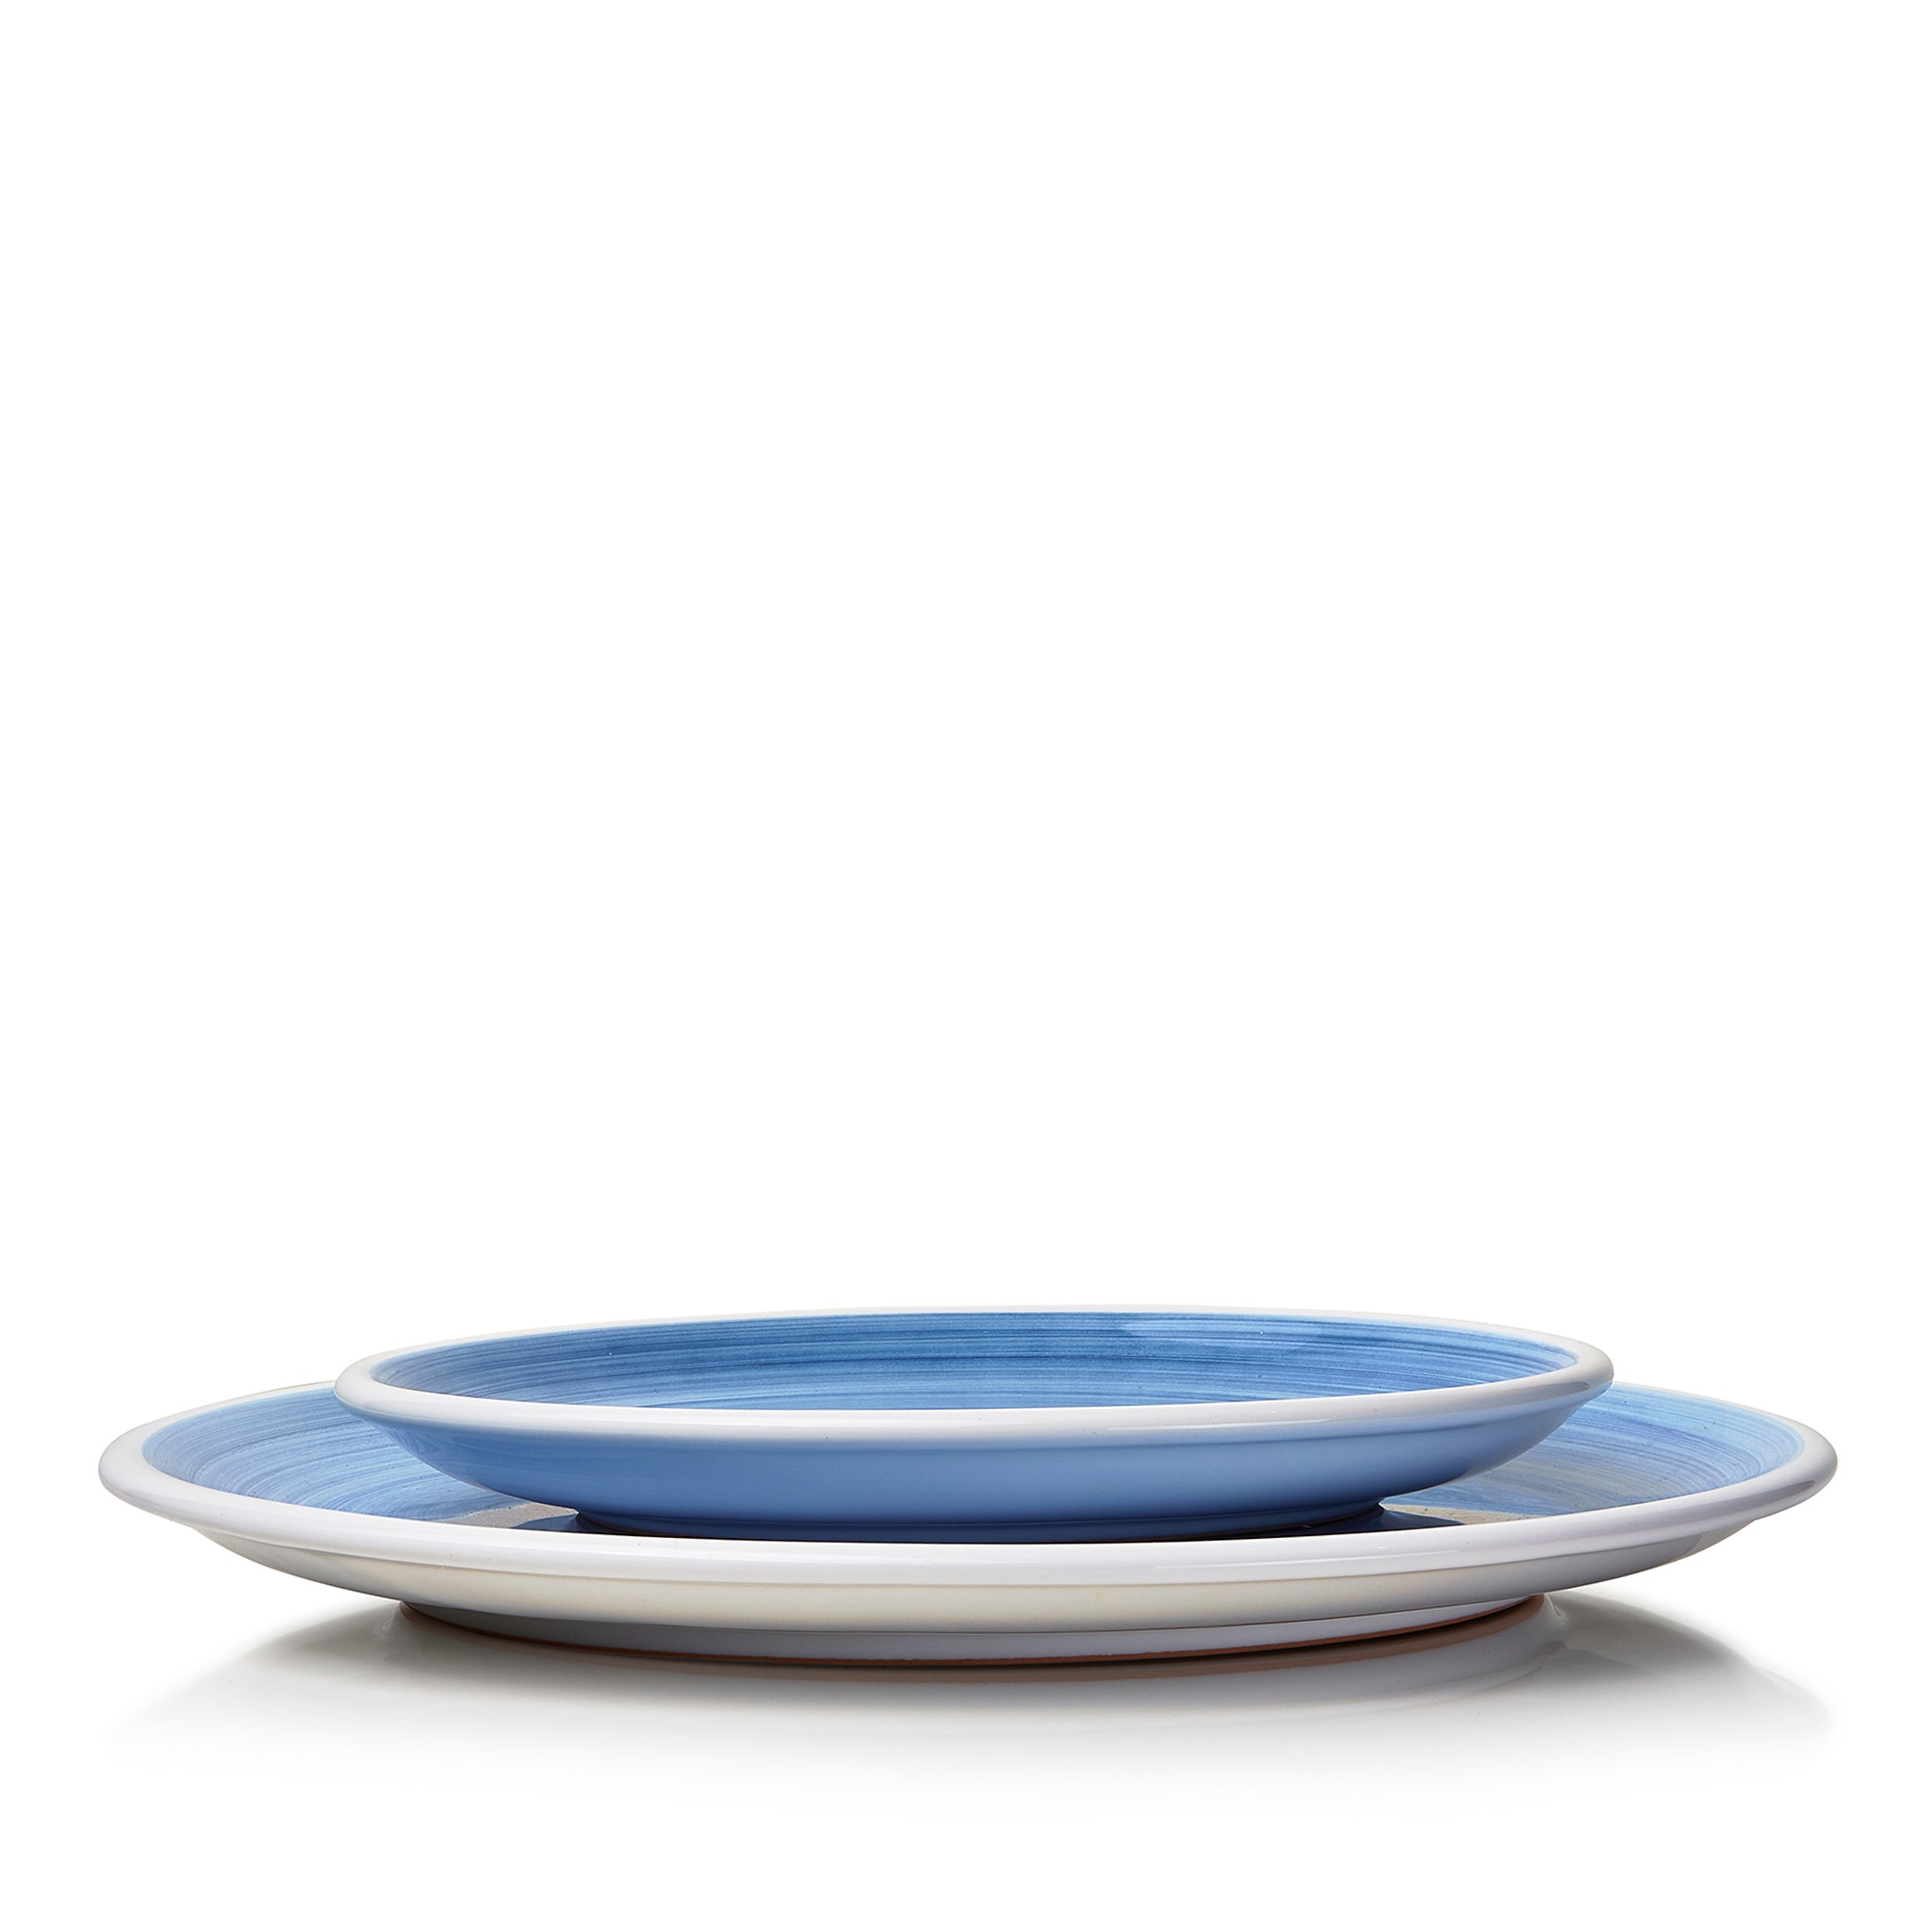 S&B 'Brushed' Ceramic Dinner Plate in Light Blue, 30cm